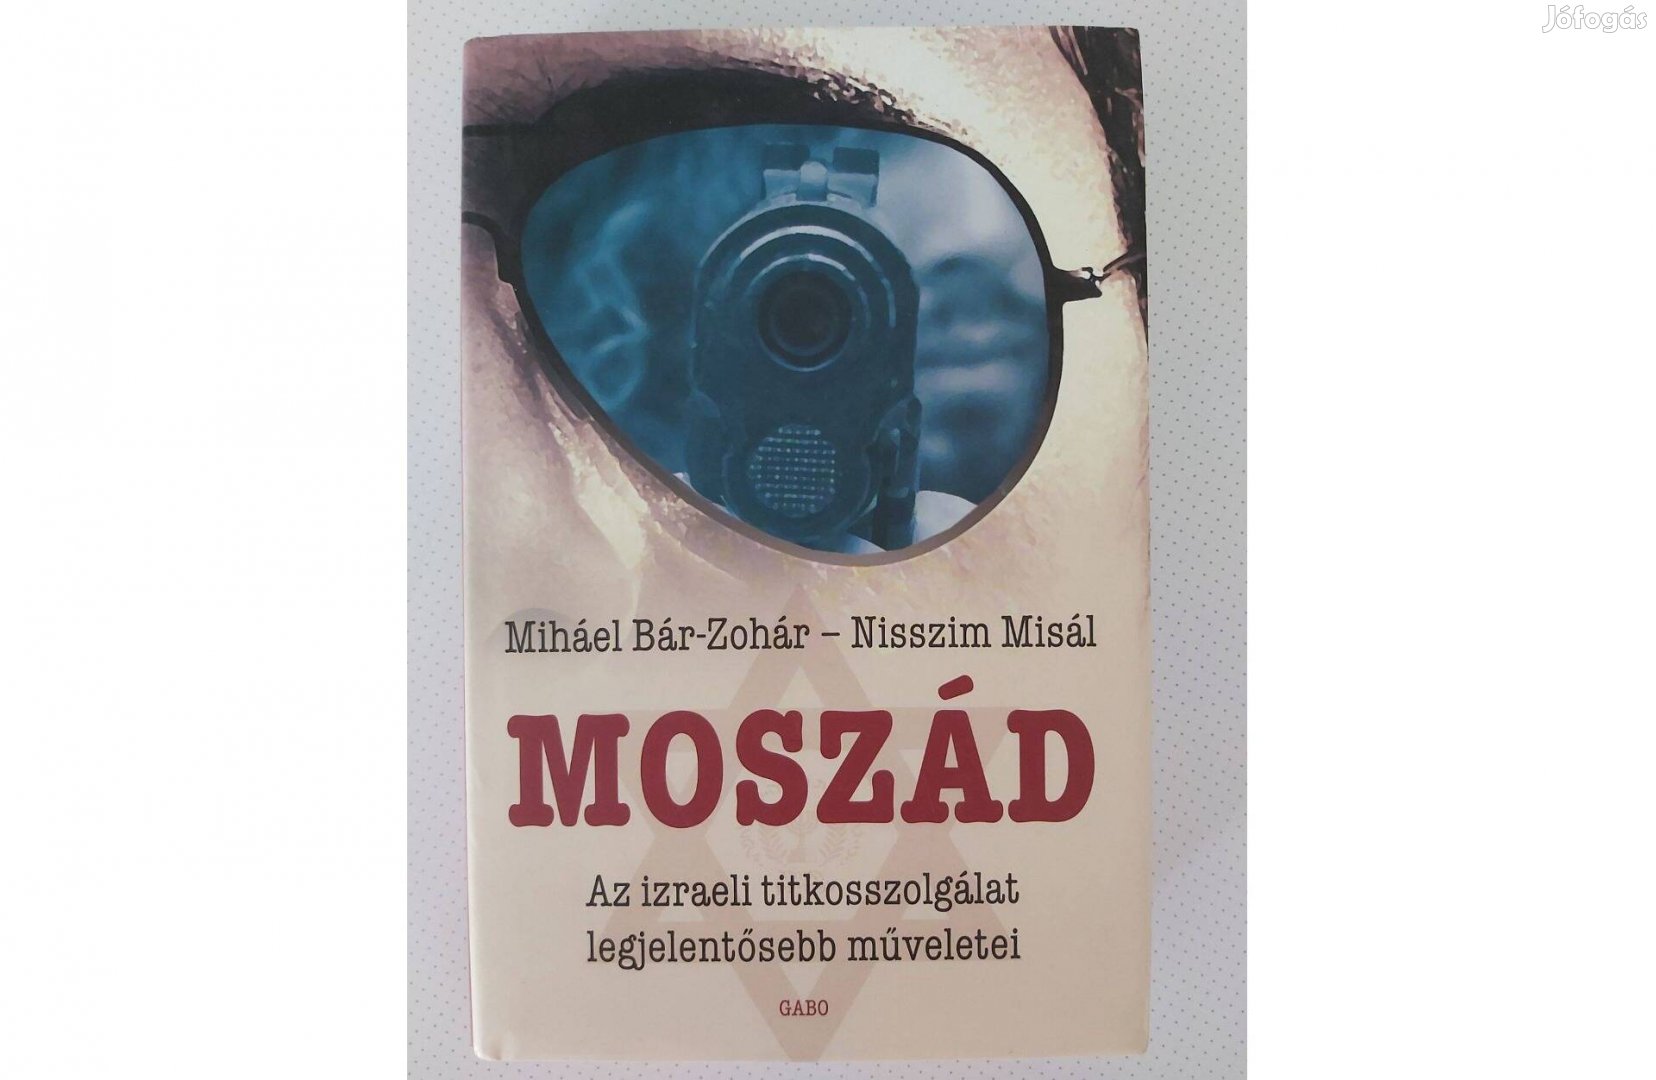 Miháel Bár-Zohár Nisszim Misál: Moszád (Az izraeli titkosszolgálat